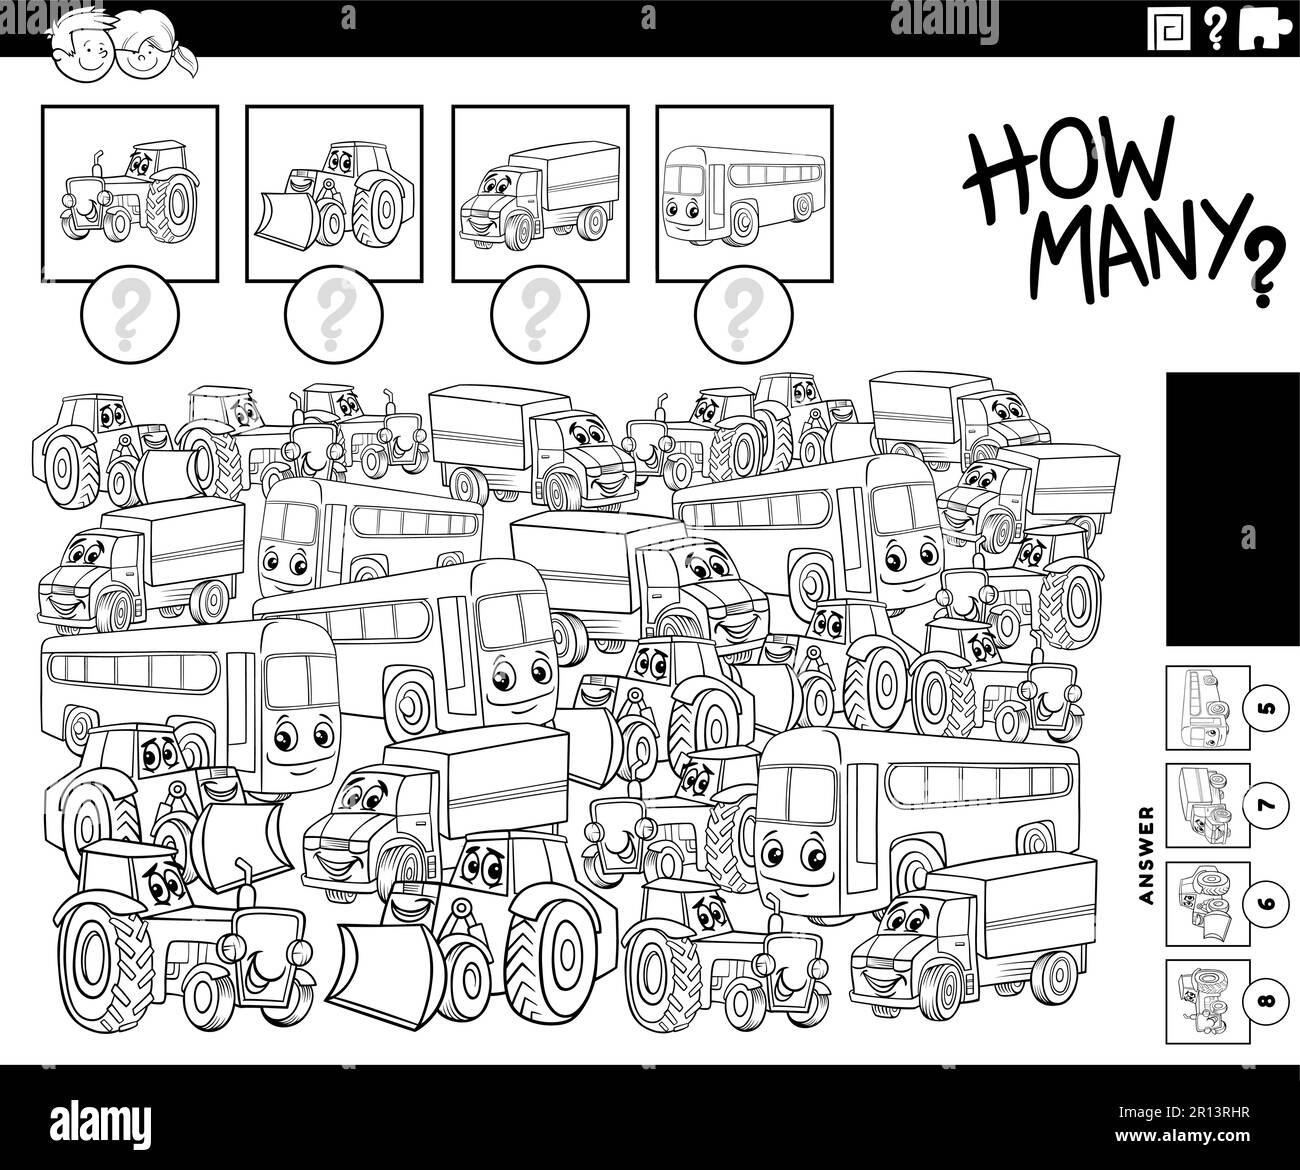 Illustration noir et blanc du jeu de comptage éducatif avec des personnages de dessin animé drôle page de coloriage Illustration de Vecteur